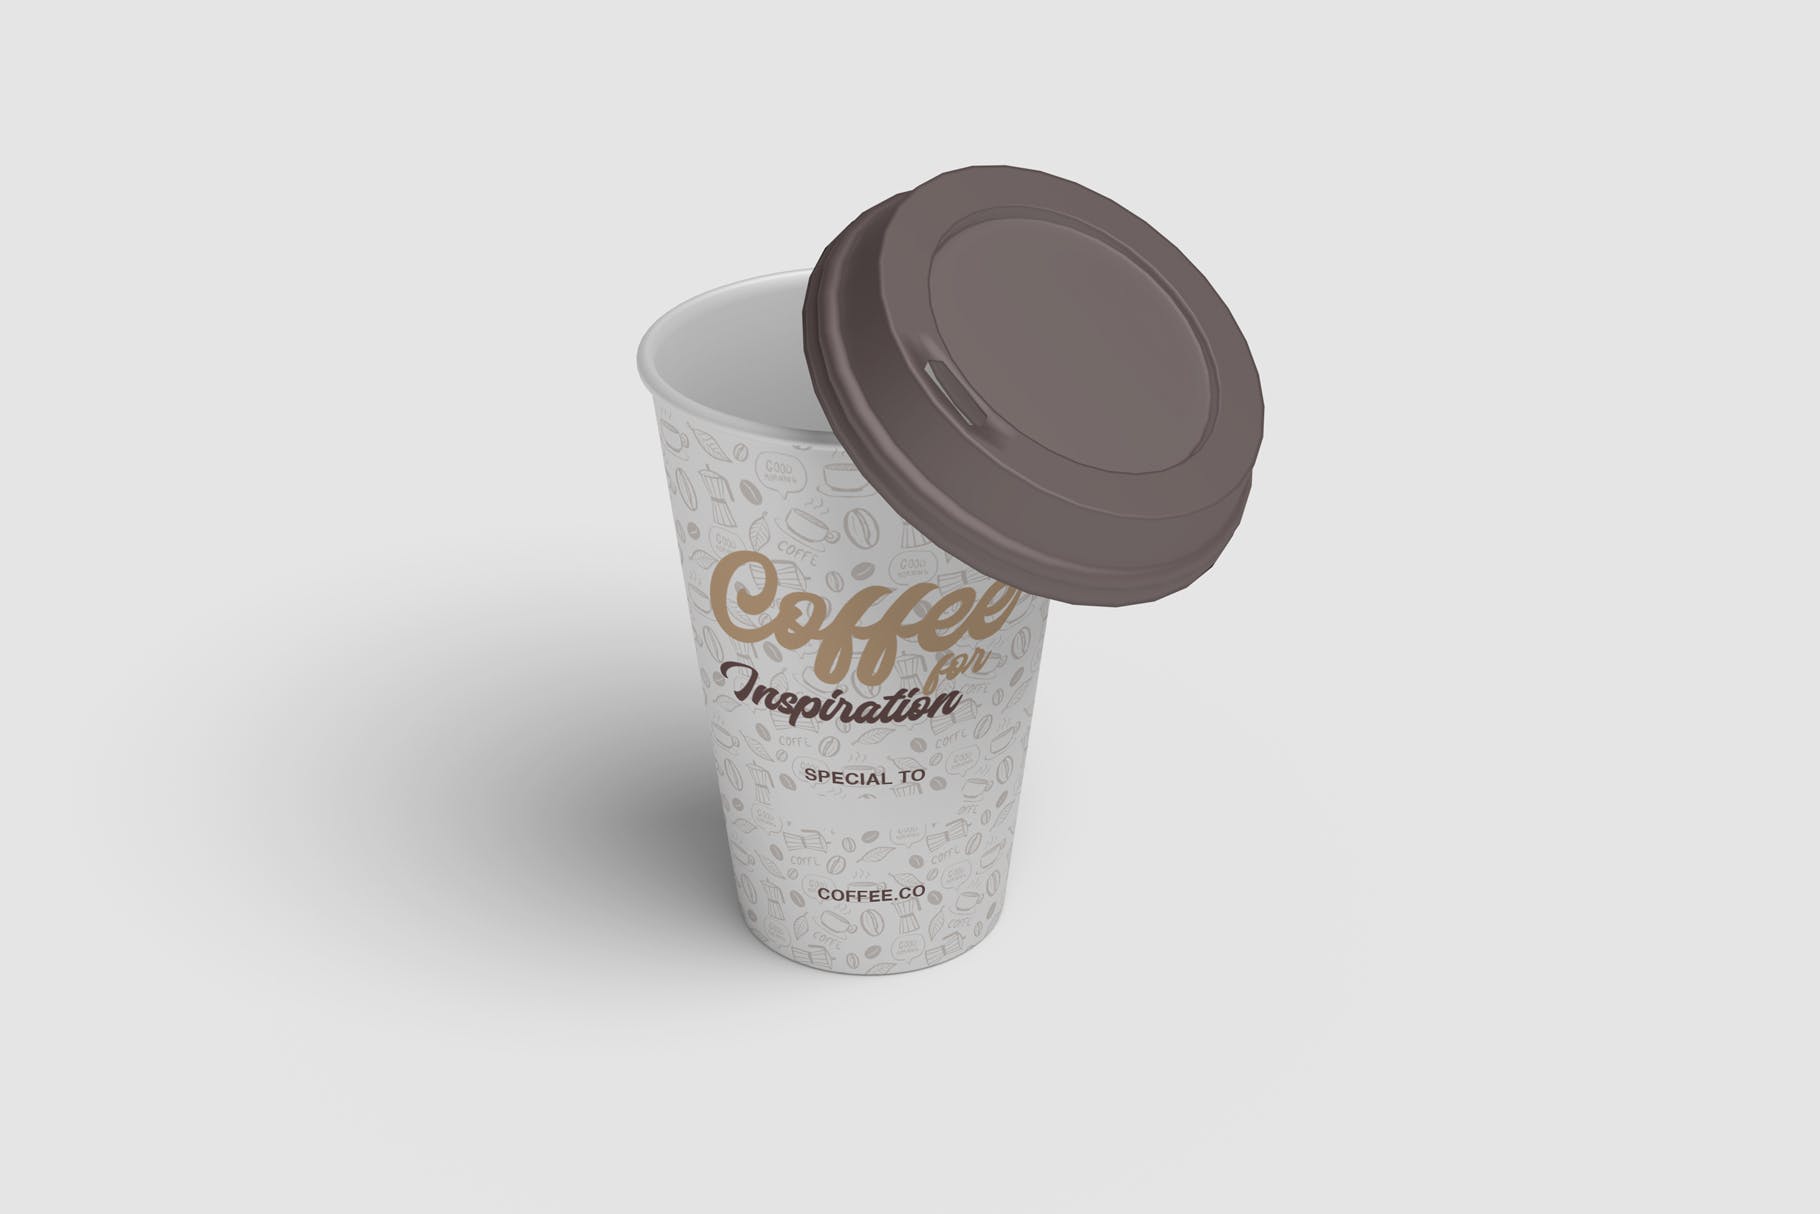 咖啡纸杯外观图案设计预览第一素材精选 Cup of Coffee Mockup插图(1)